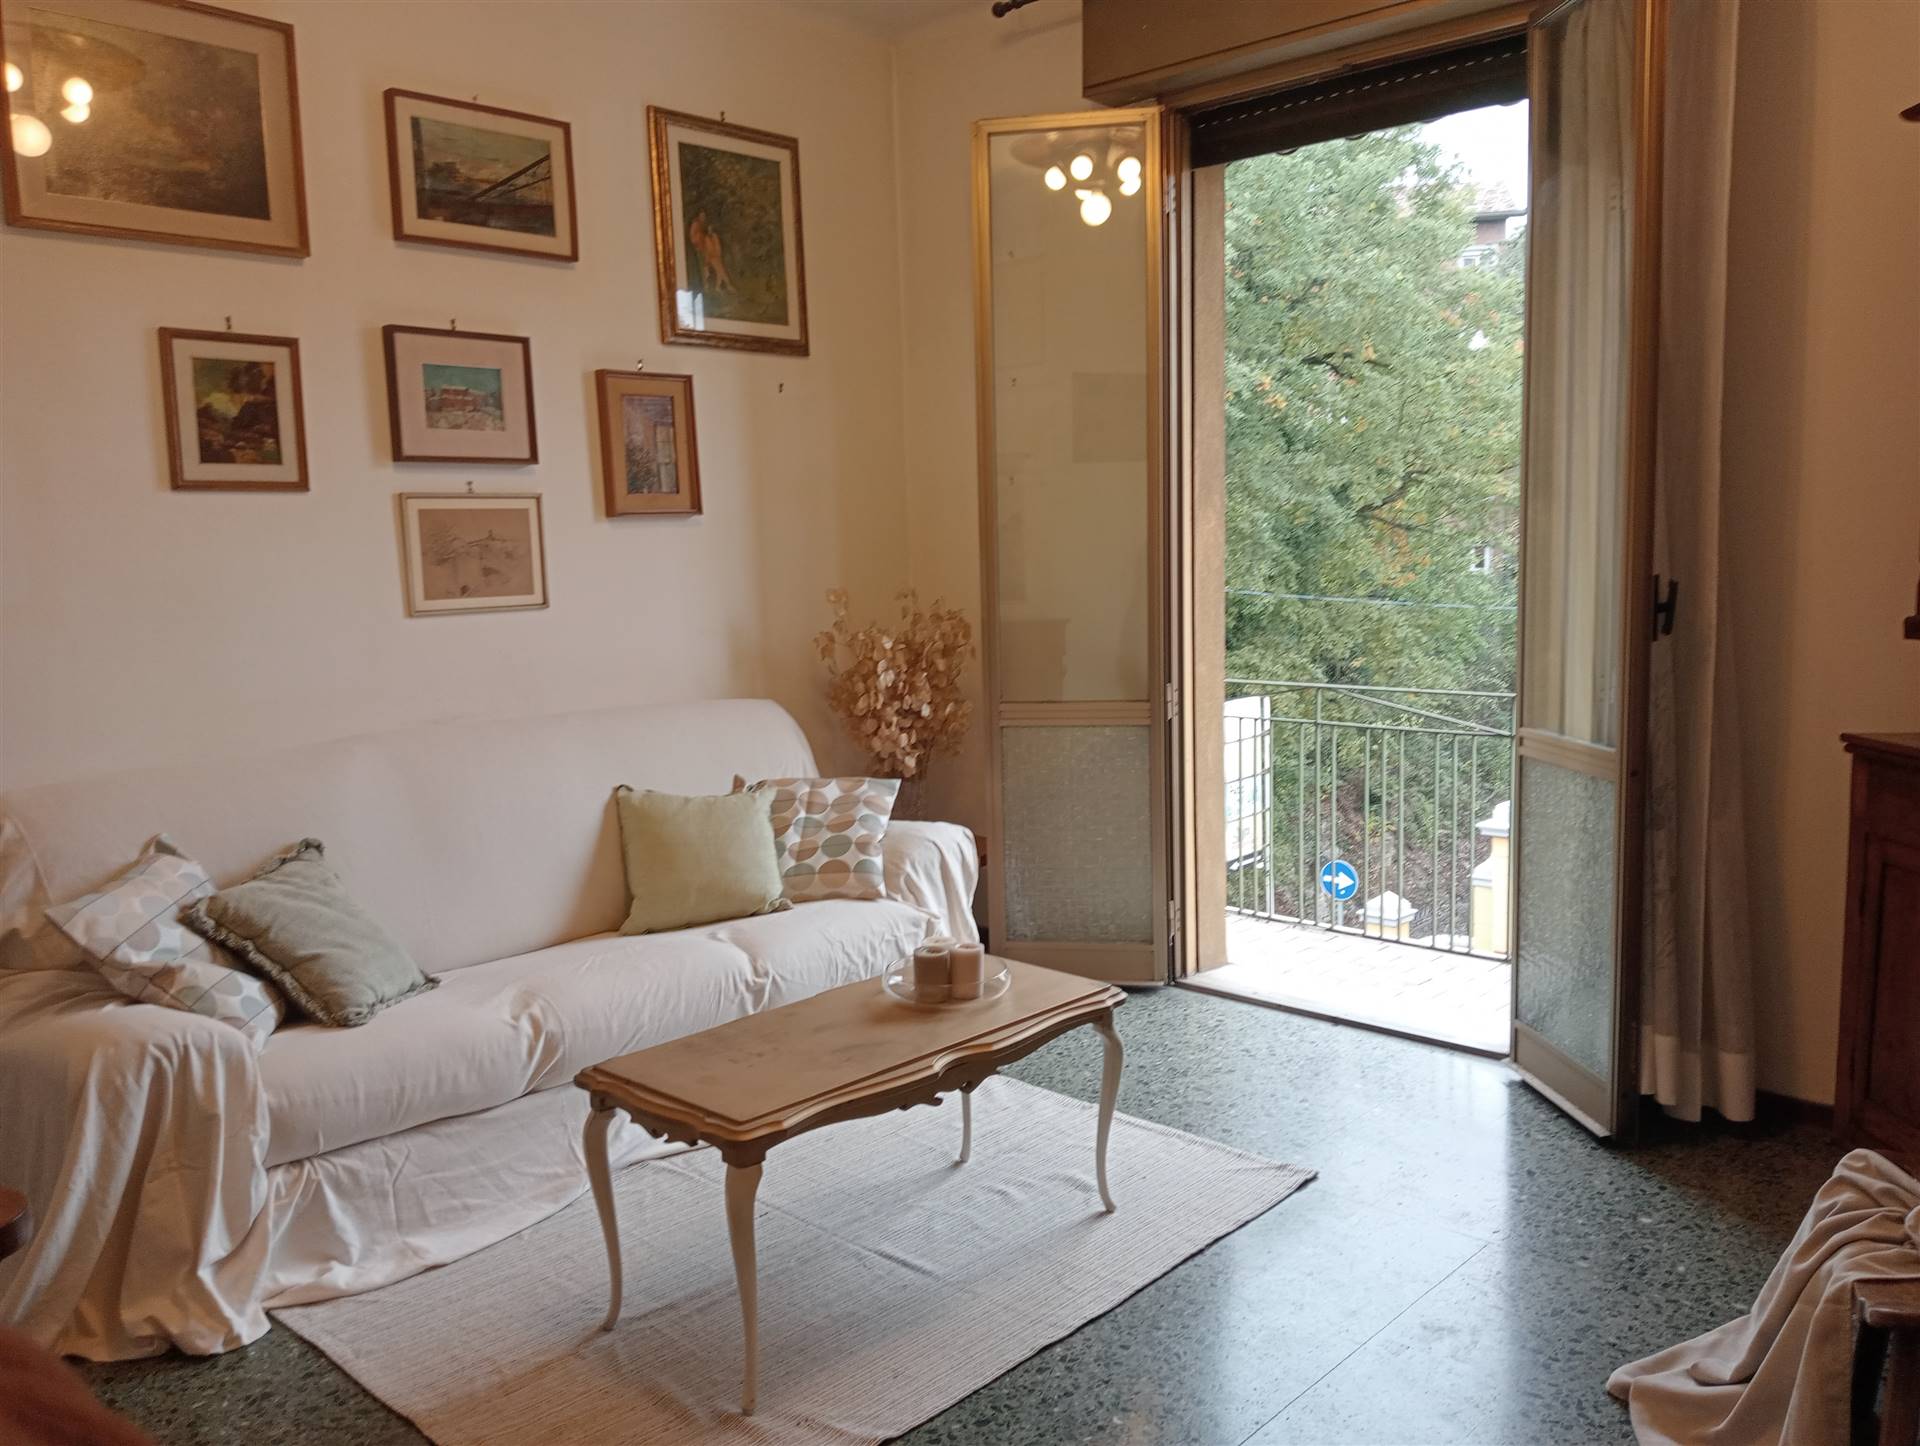 Appartamento in vendita a Casalecchio di Reno, 4 locali, zona Località: PARCO TALON, prezzo € 219.000 | CambioCasa.it